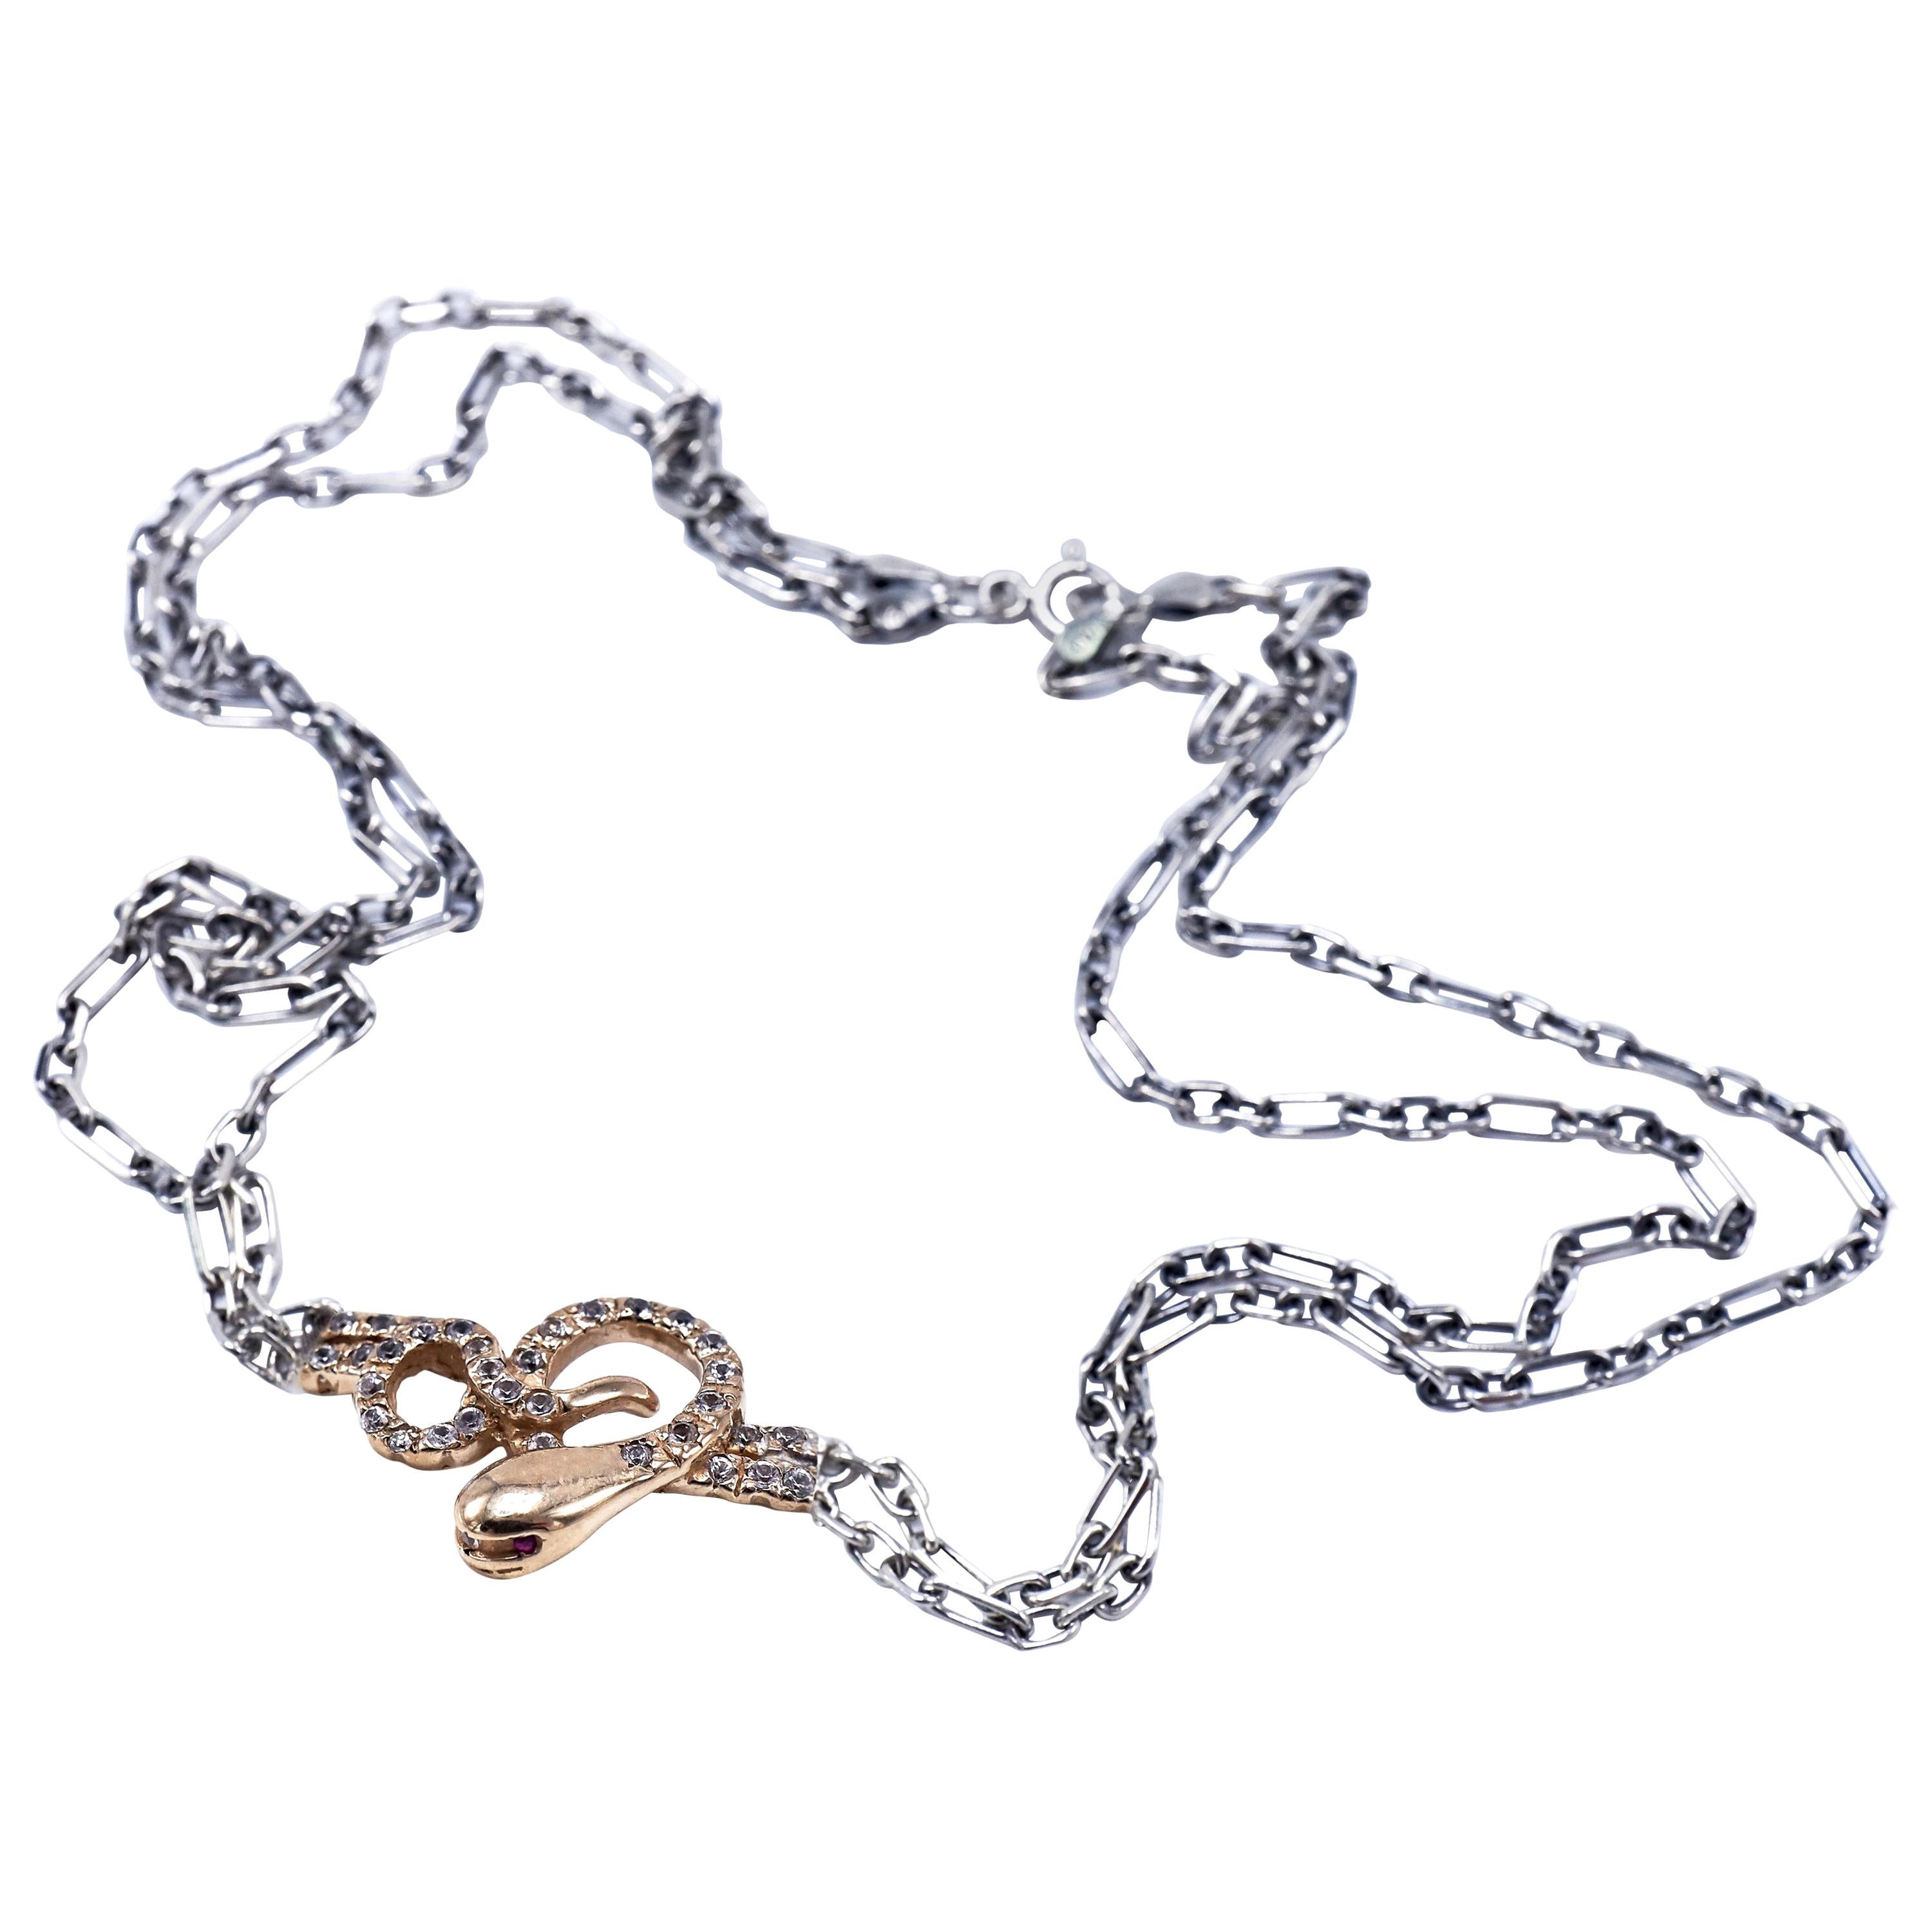 Collier à pendentif serpent en or, diamant blanc, rubis, chaîne épaisse, argent sterling J DAUPHIN

J DAUPHIN 